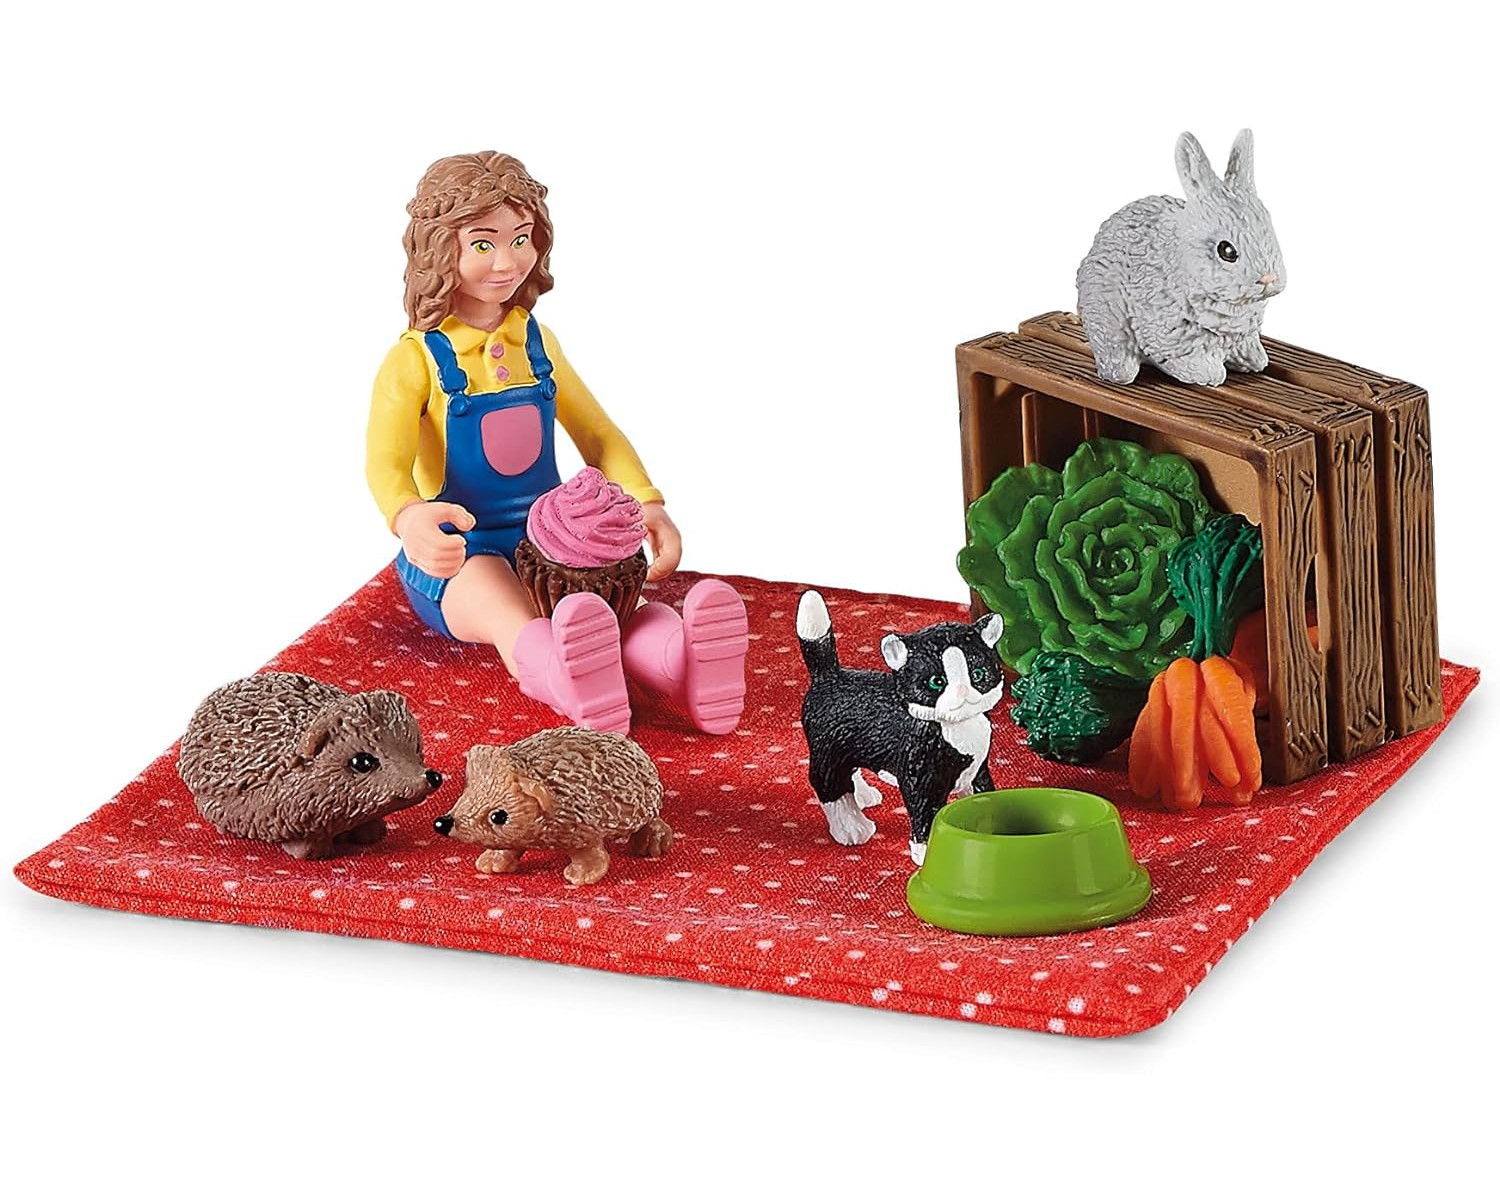 SCHLEICH Picknick - Spielfiguren Haustieren World kleinen Farm Tierfiguren mit